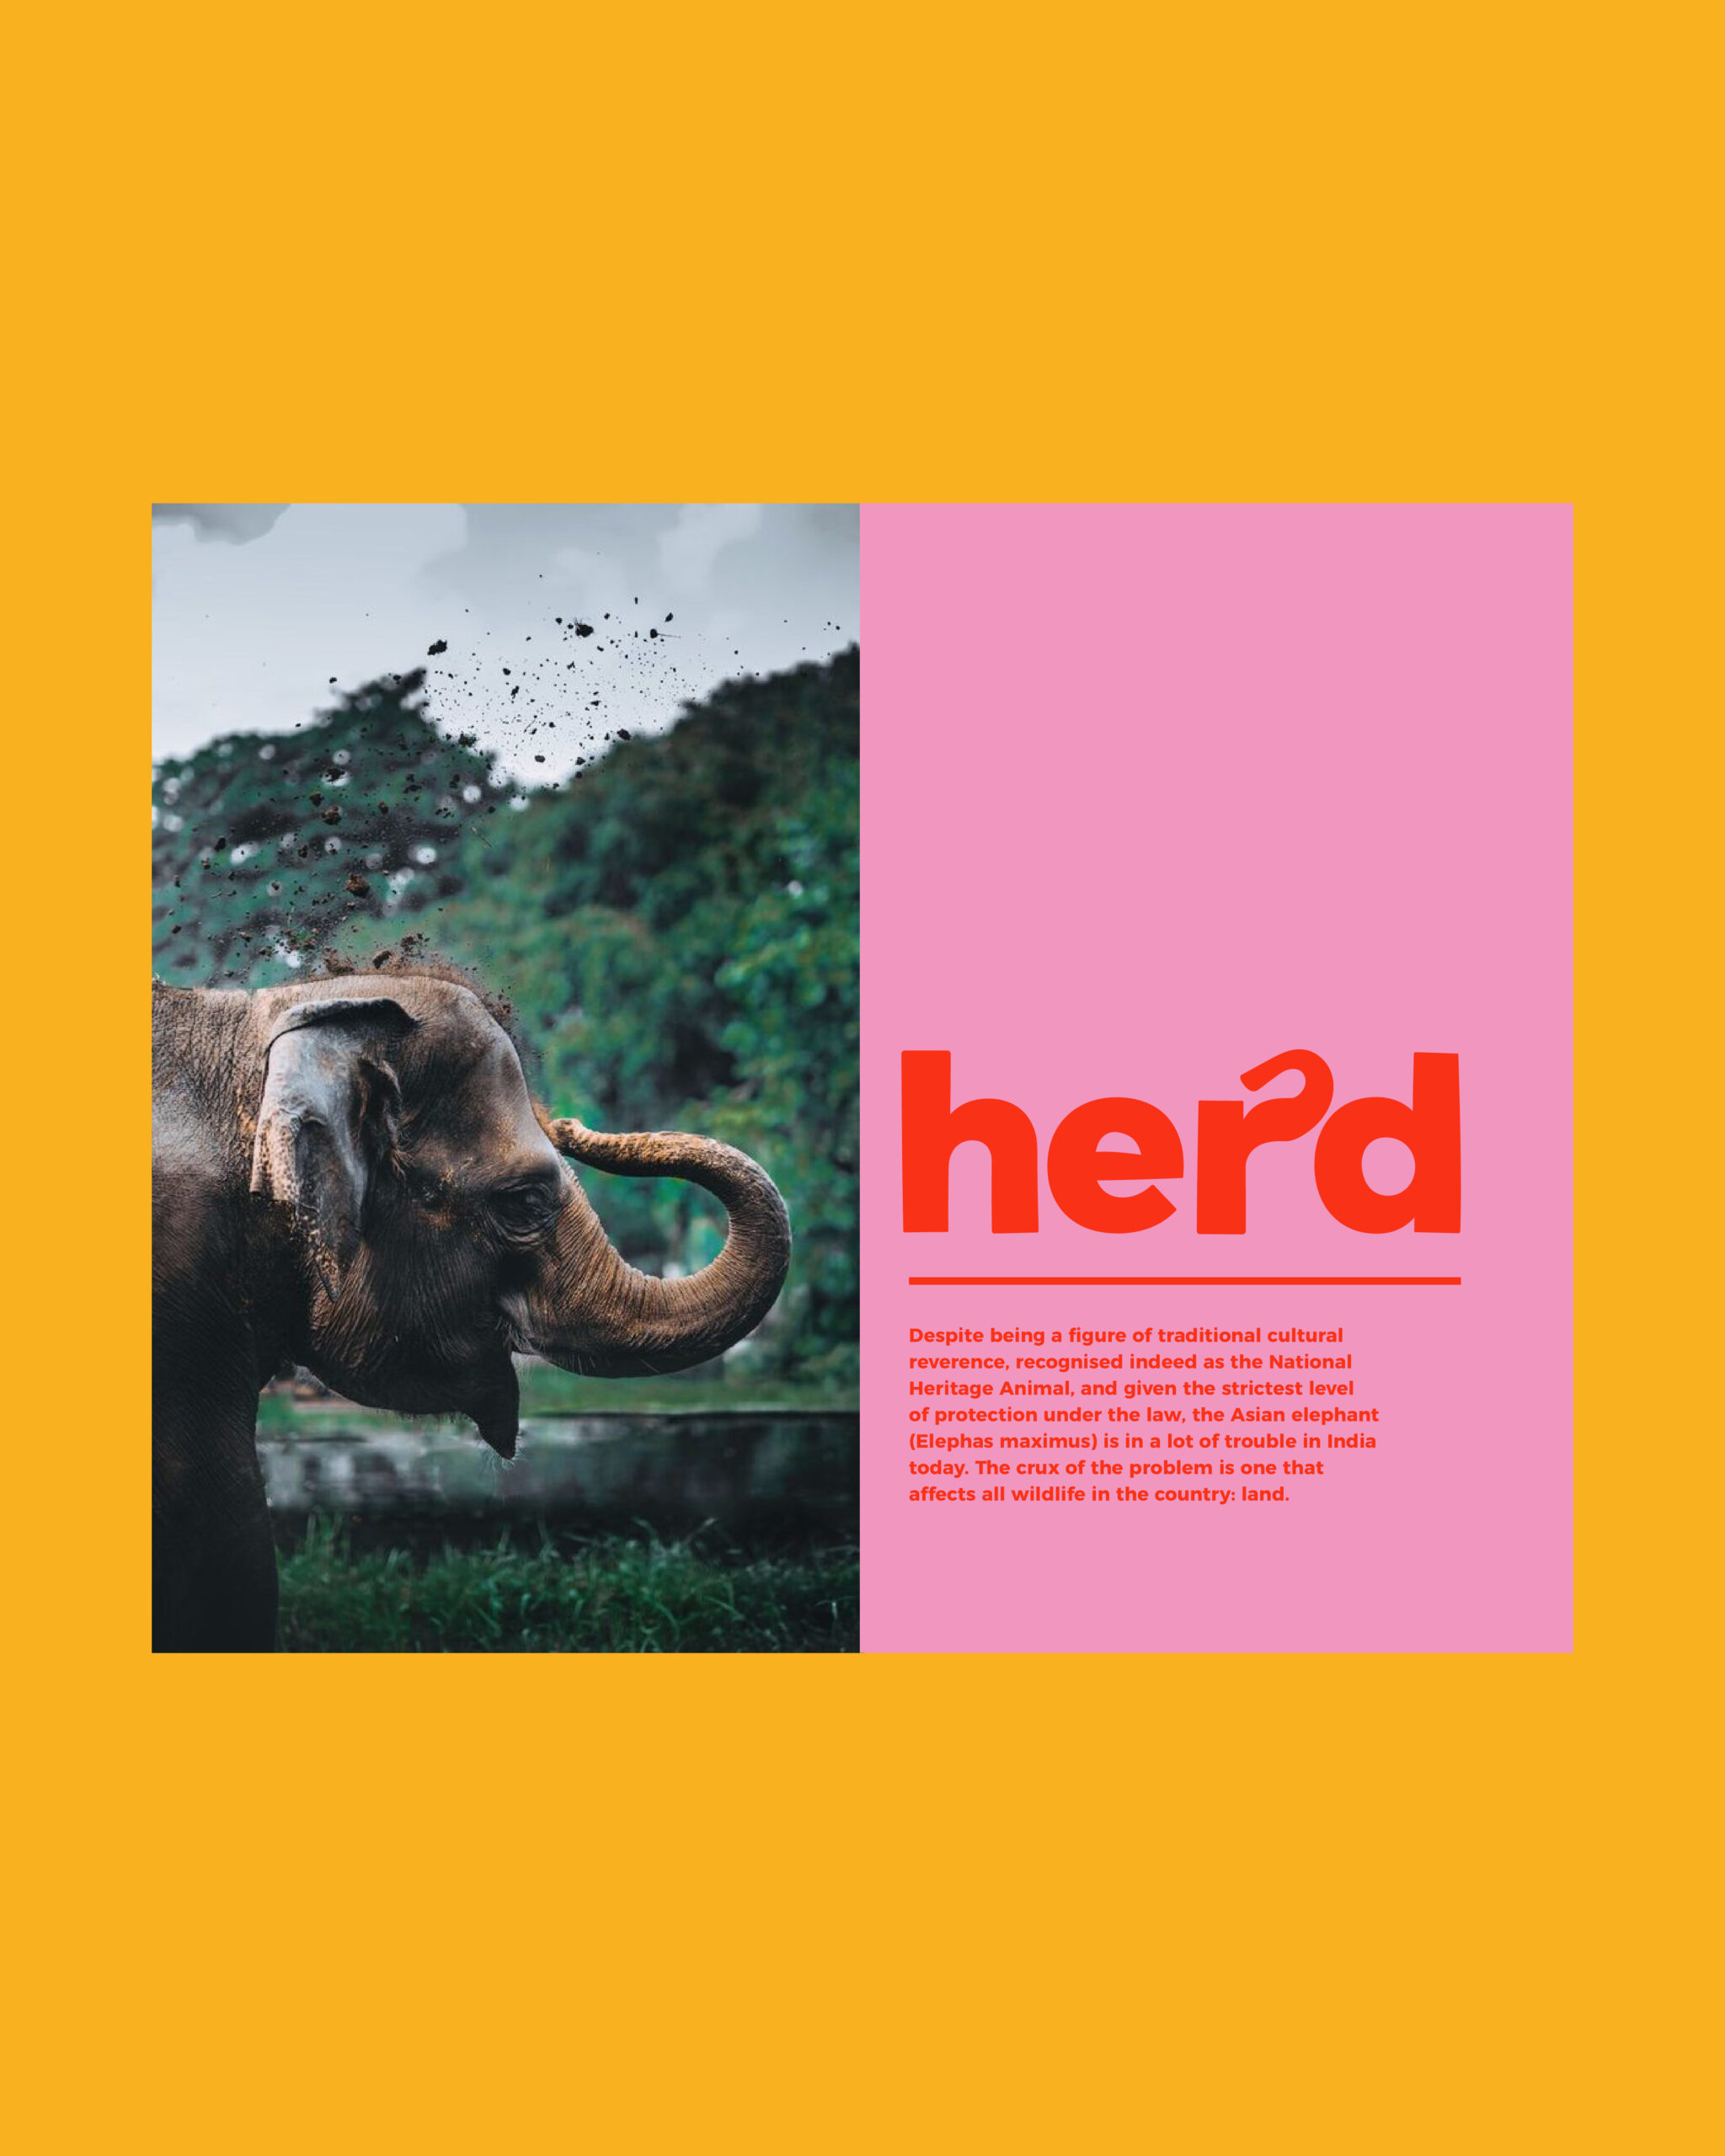 herd-insta-04